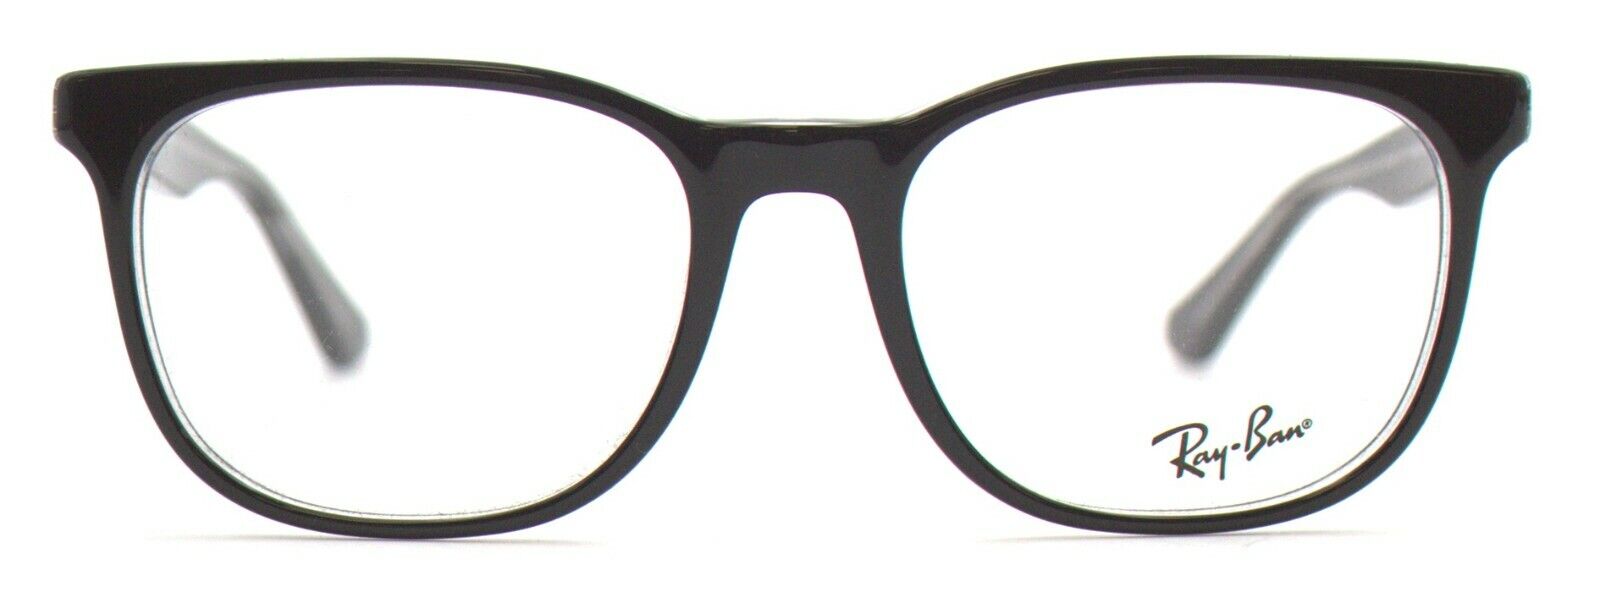 Ray-Ban Damen Herren Brillenfassung RX5369 2034 52mm schwarz Vollrand BO9_4 B Oryginalna gwarancja, tanio